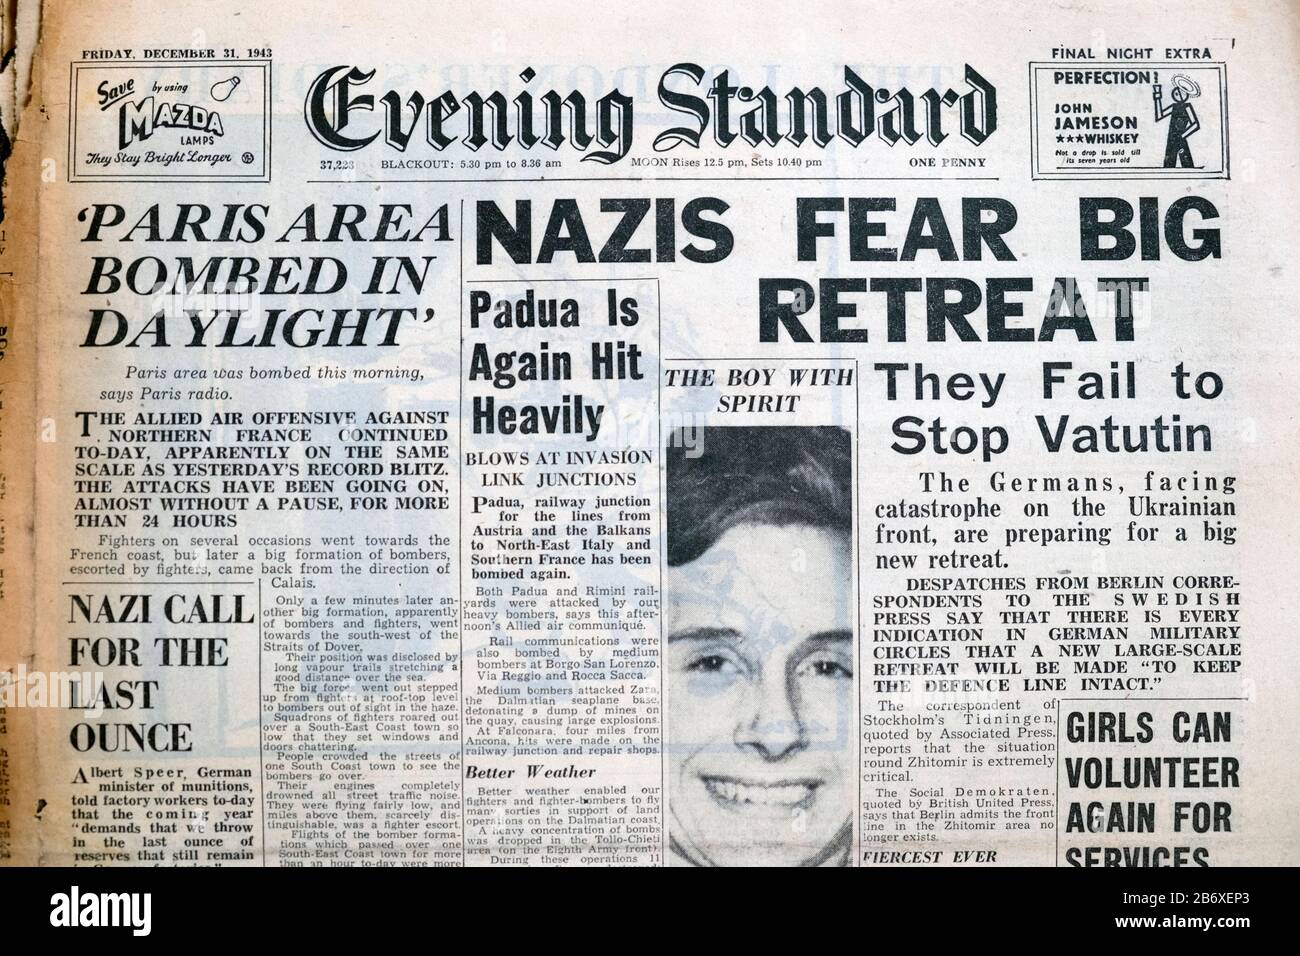 WWII World War 2 journal Headline 'Nazis Fear Big Retreat' sur la page d'accueil De Evening Standard 31 décembre 1943 à Londres Royaume-Uni Banque D'Images